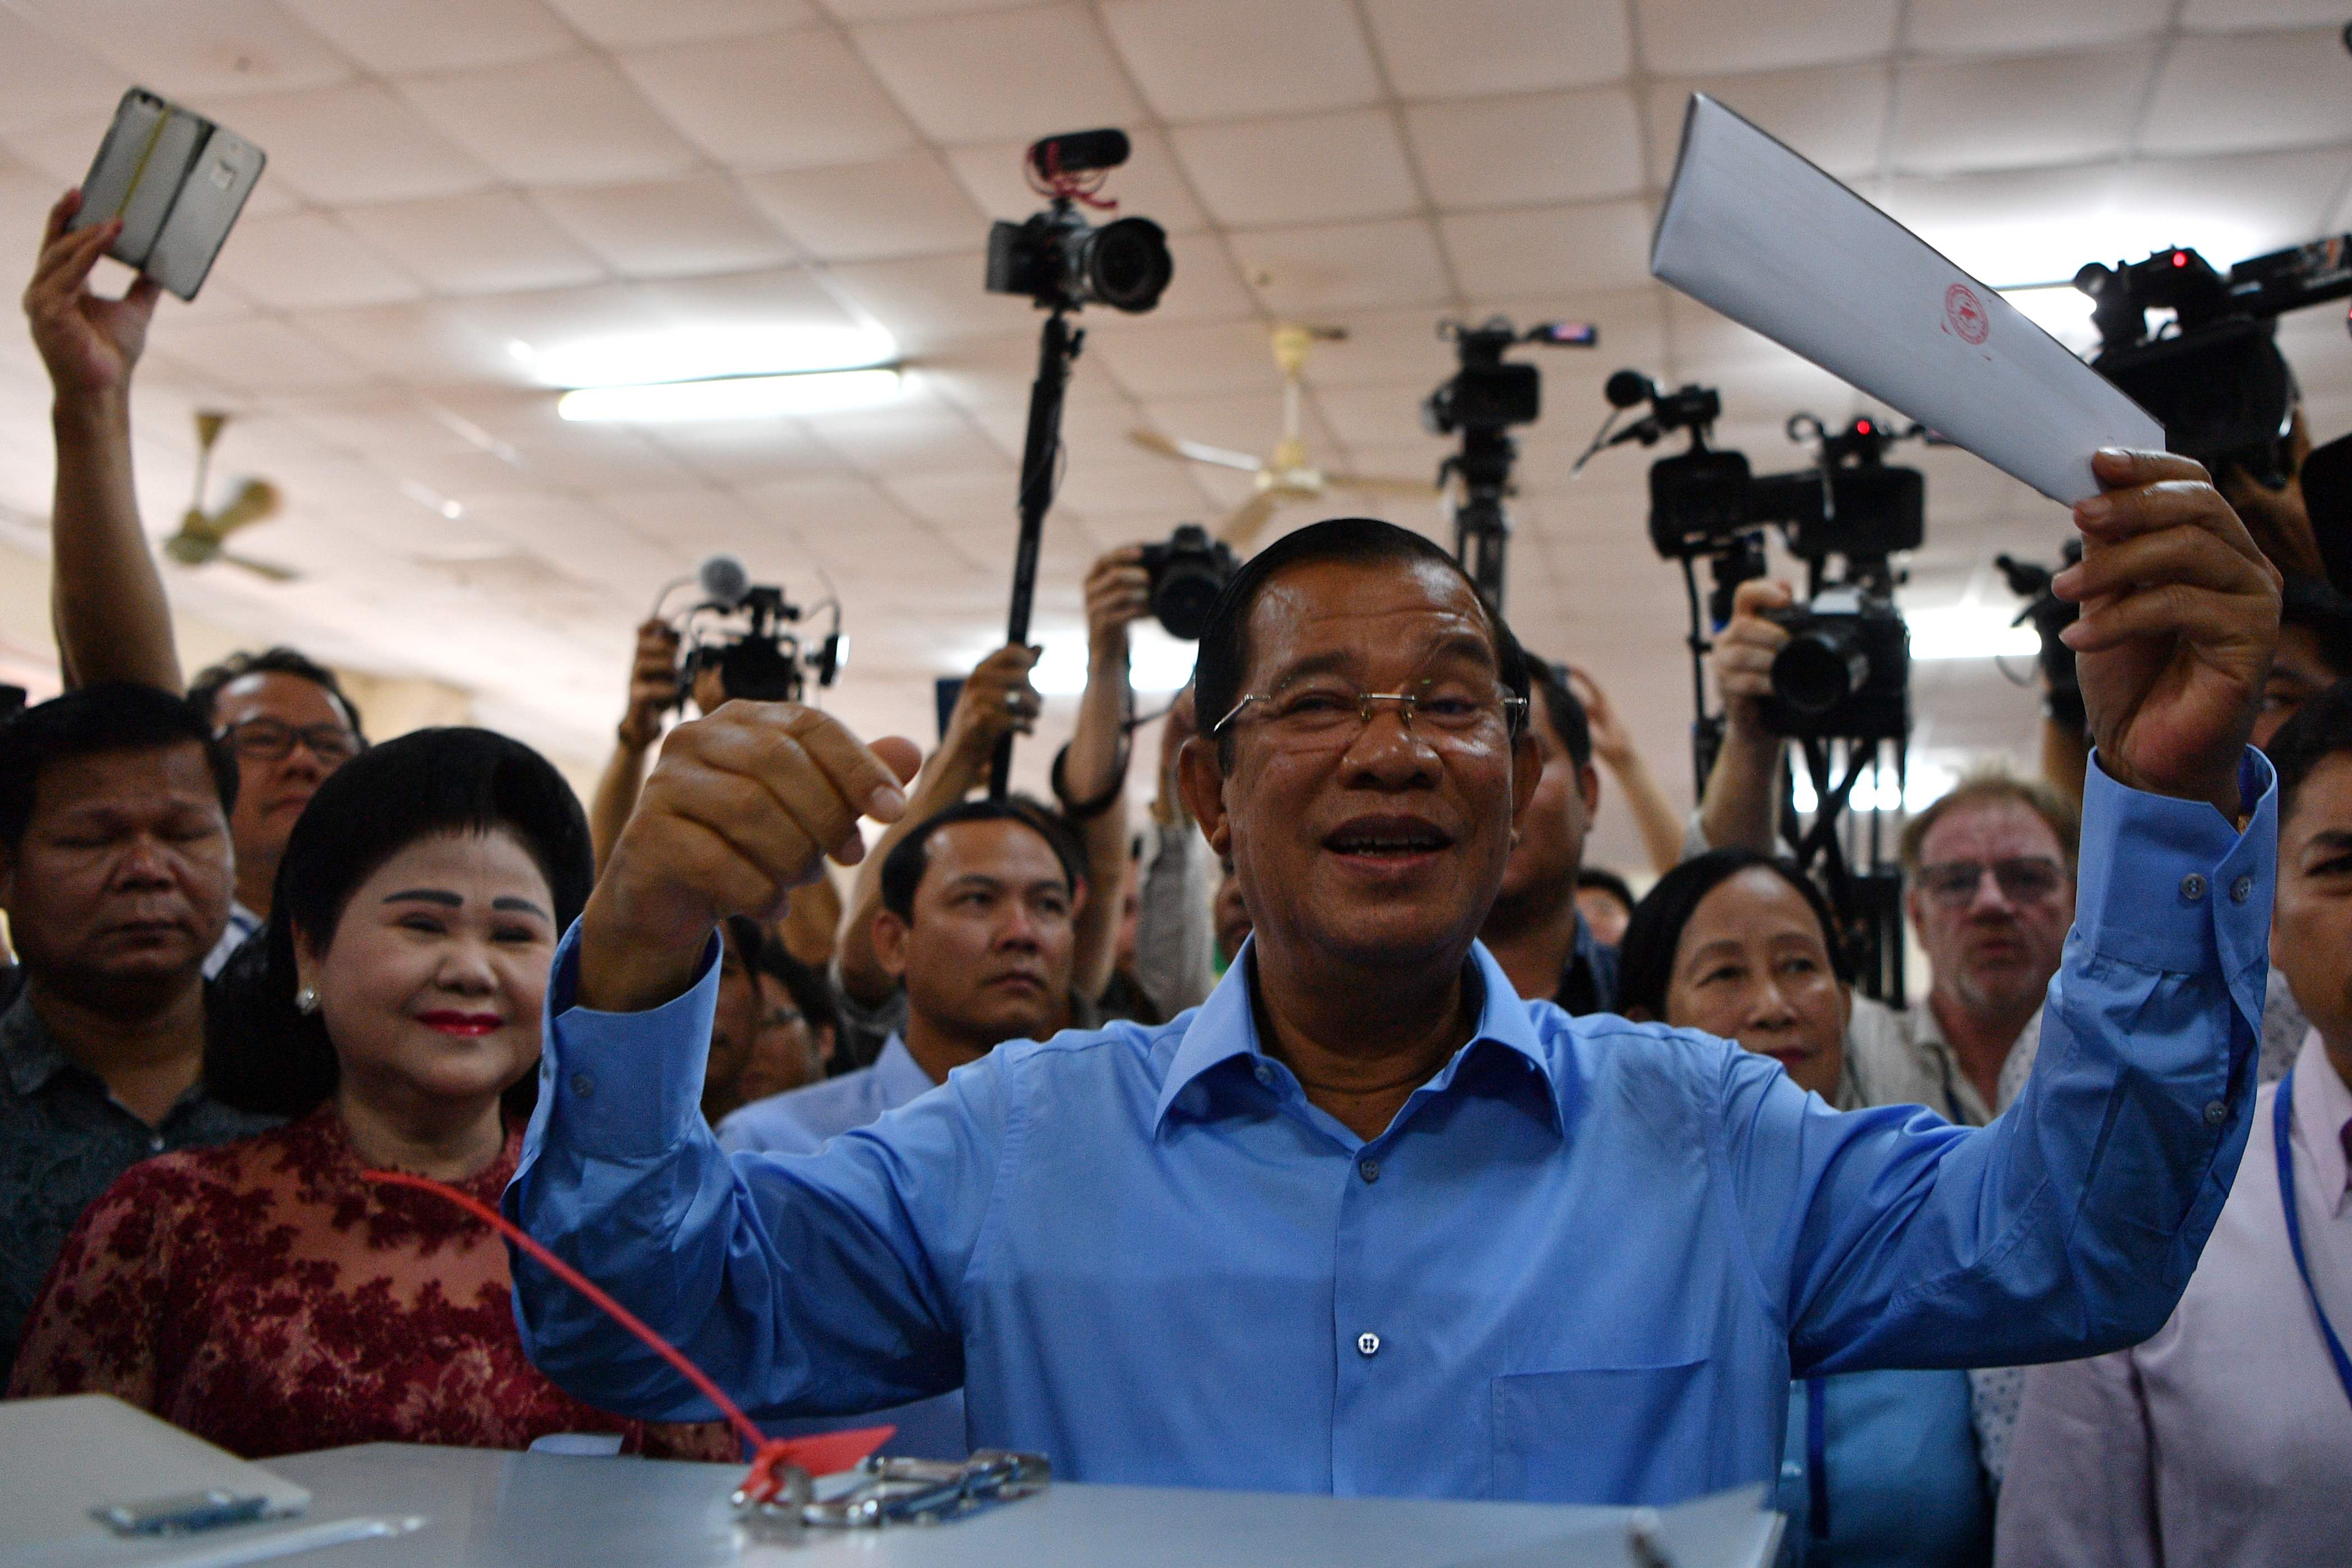 رئيس الوزراء الكمبودي هون سين